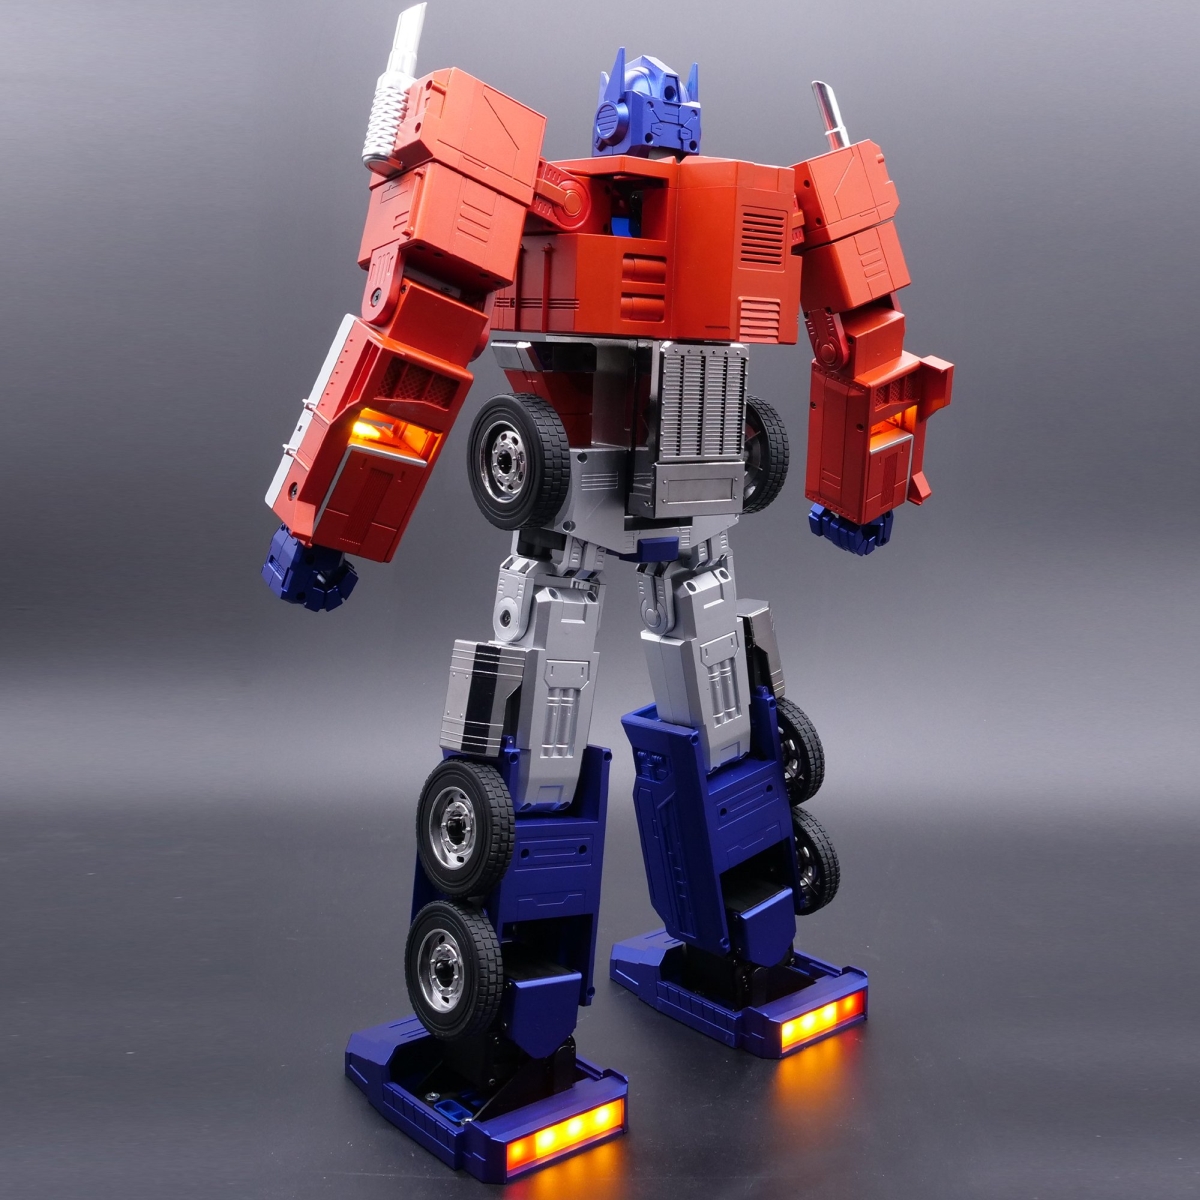 optimus prime voice activated toy